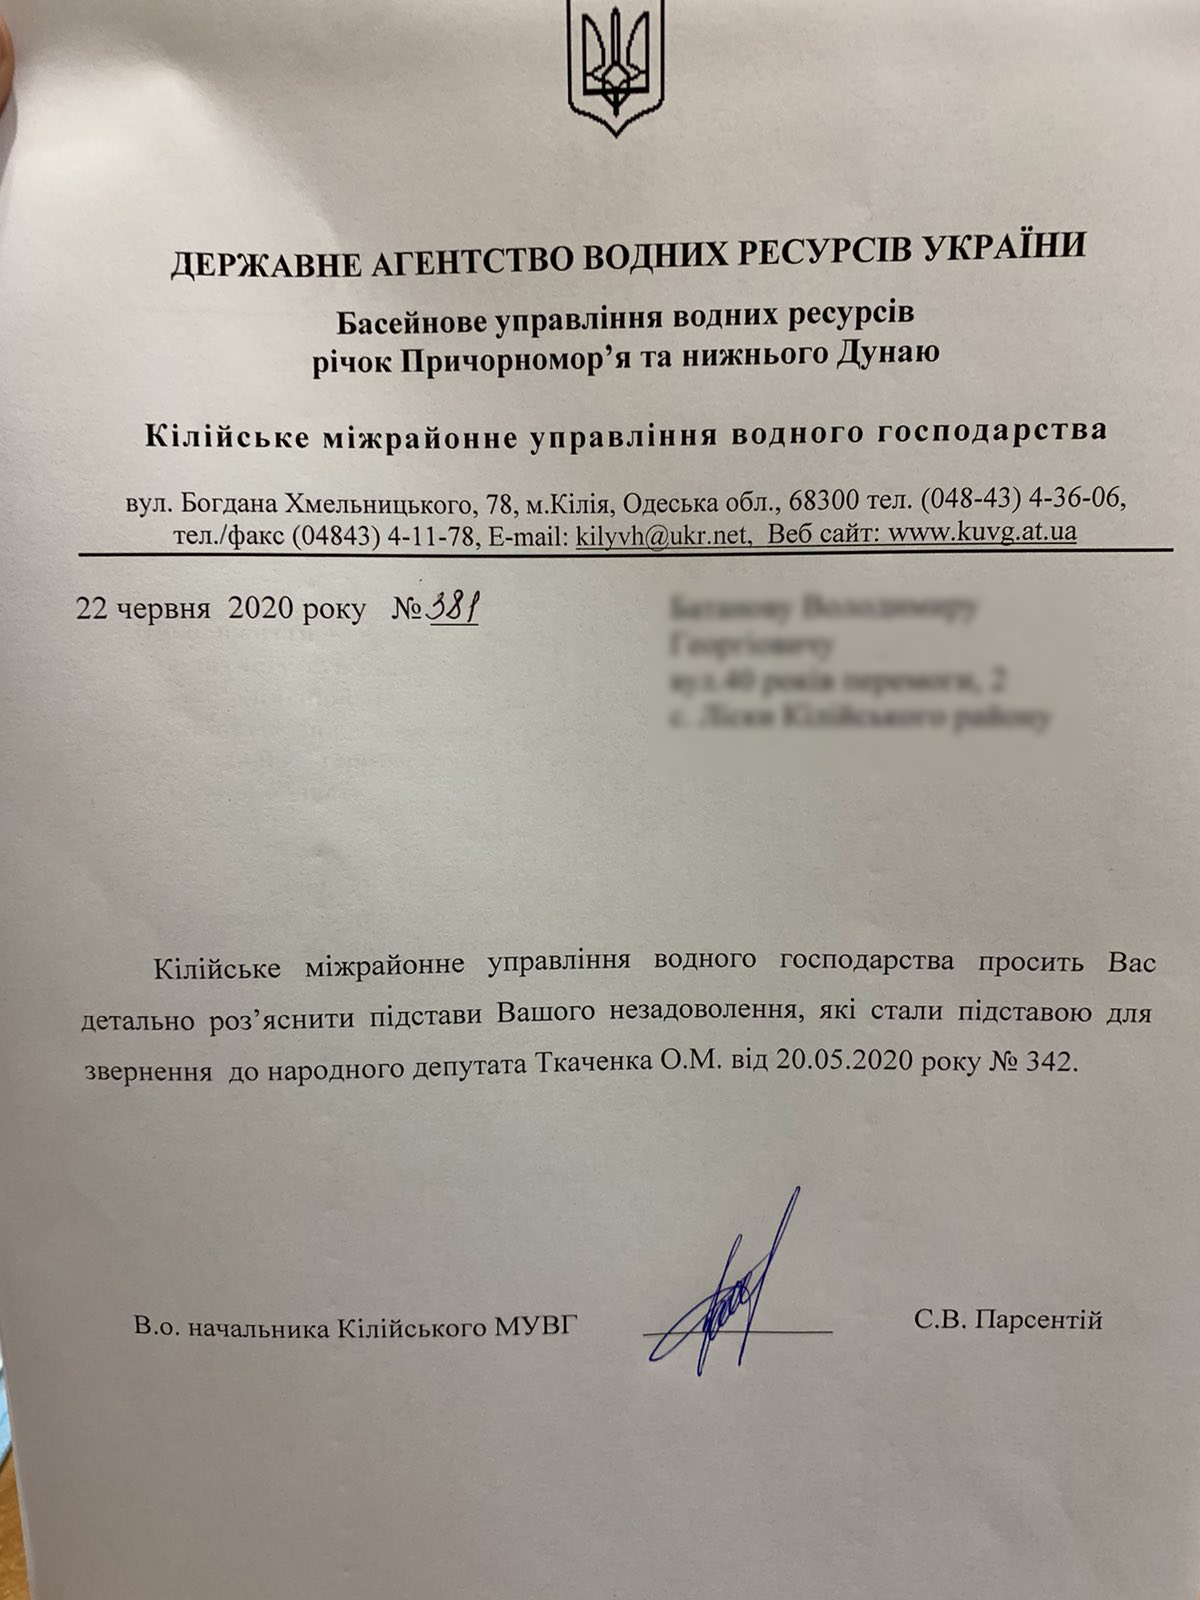 Фейки от народного депутата: Александр Ткаченко попался на подделывании подписи в выдуманном обращении граждан